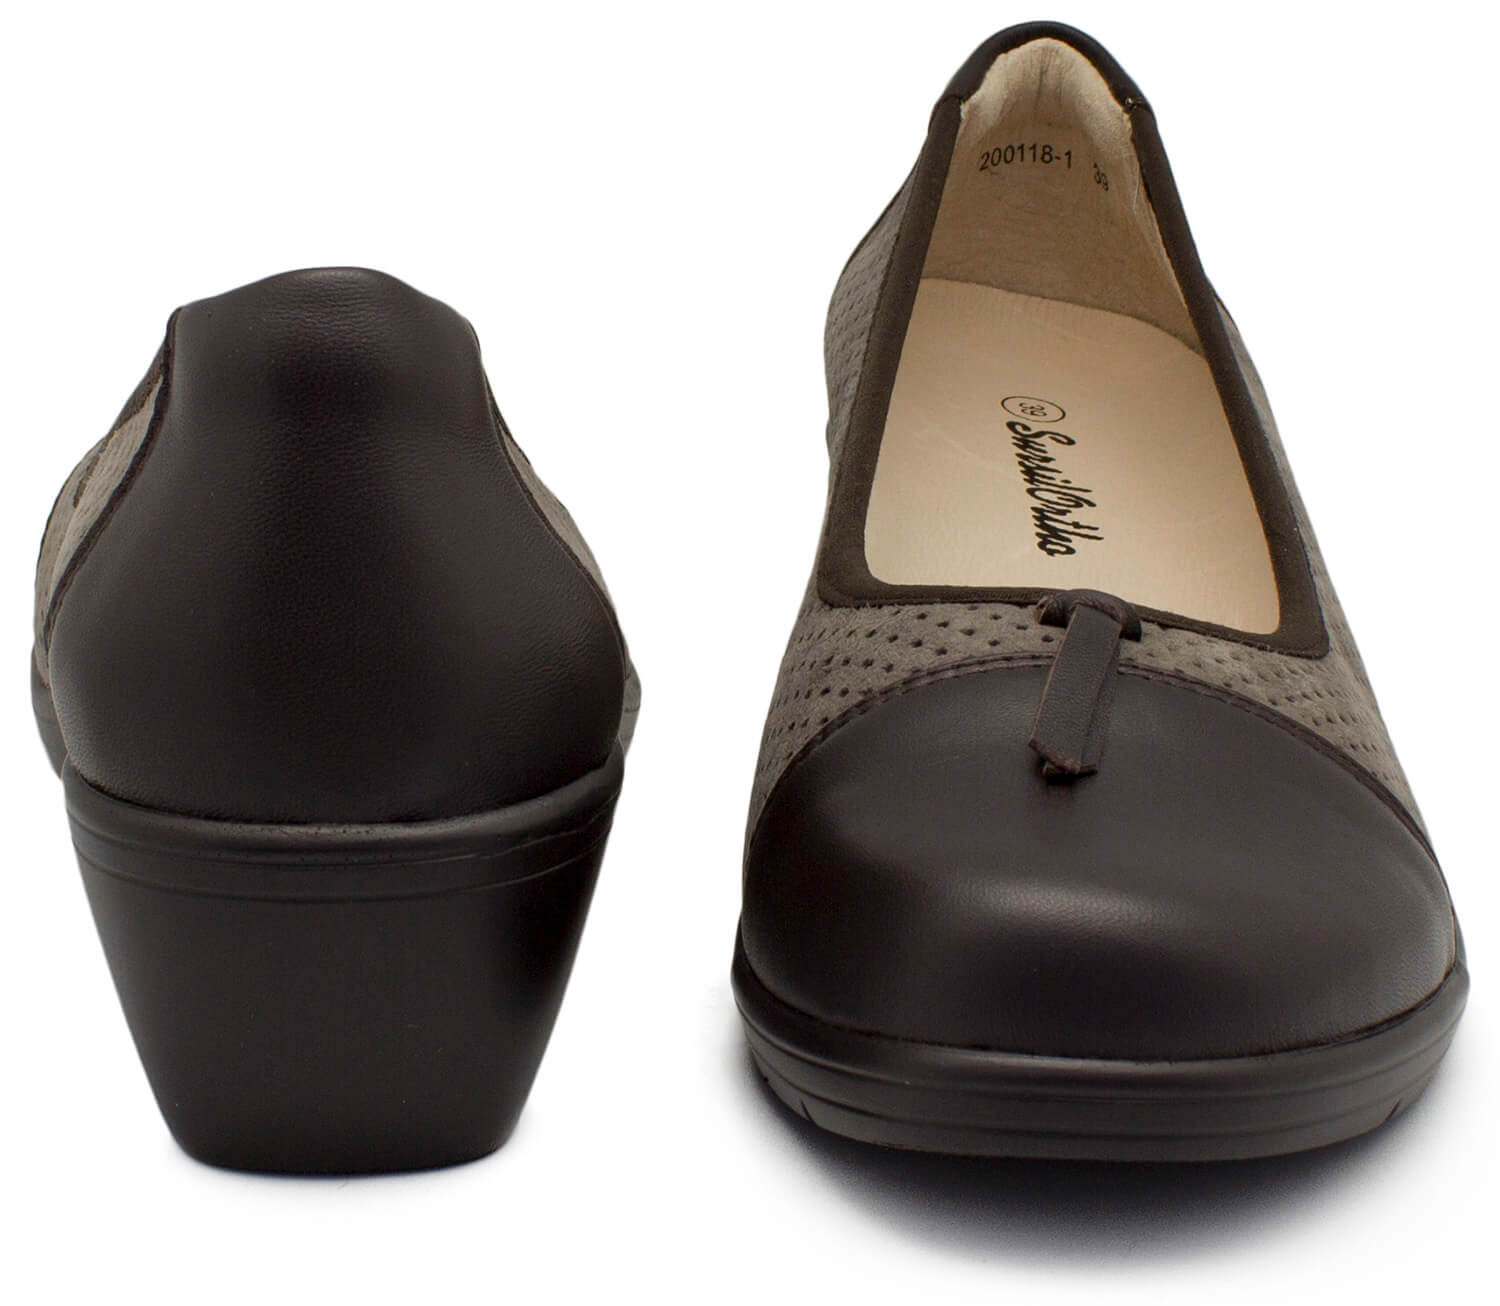 Сайт большая обувь. Ортопедическая обувь Тони Браун 1856. Сурсил женская обувь. Ортомода ортопедическая обувь. Ортомода одежда для инвалидов.